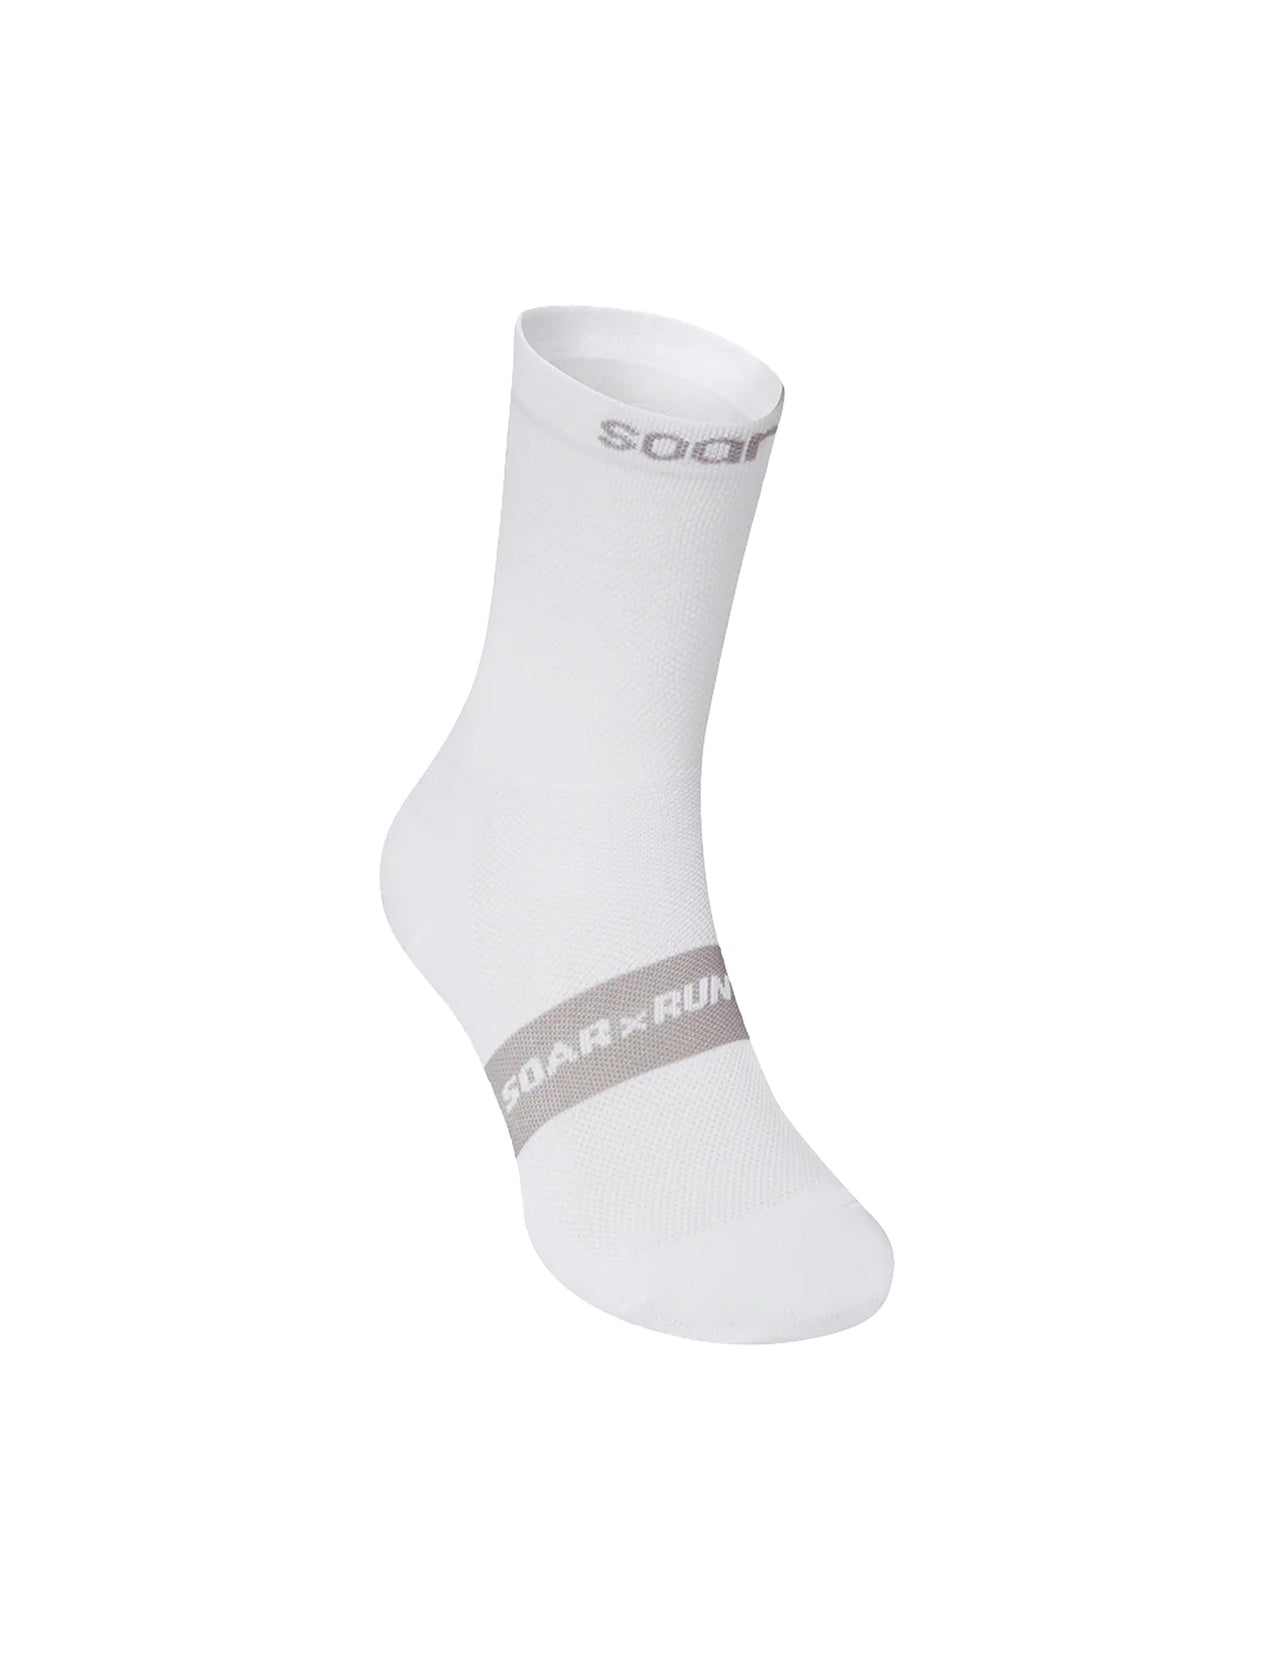 Crew Sock in White